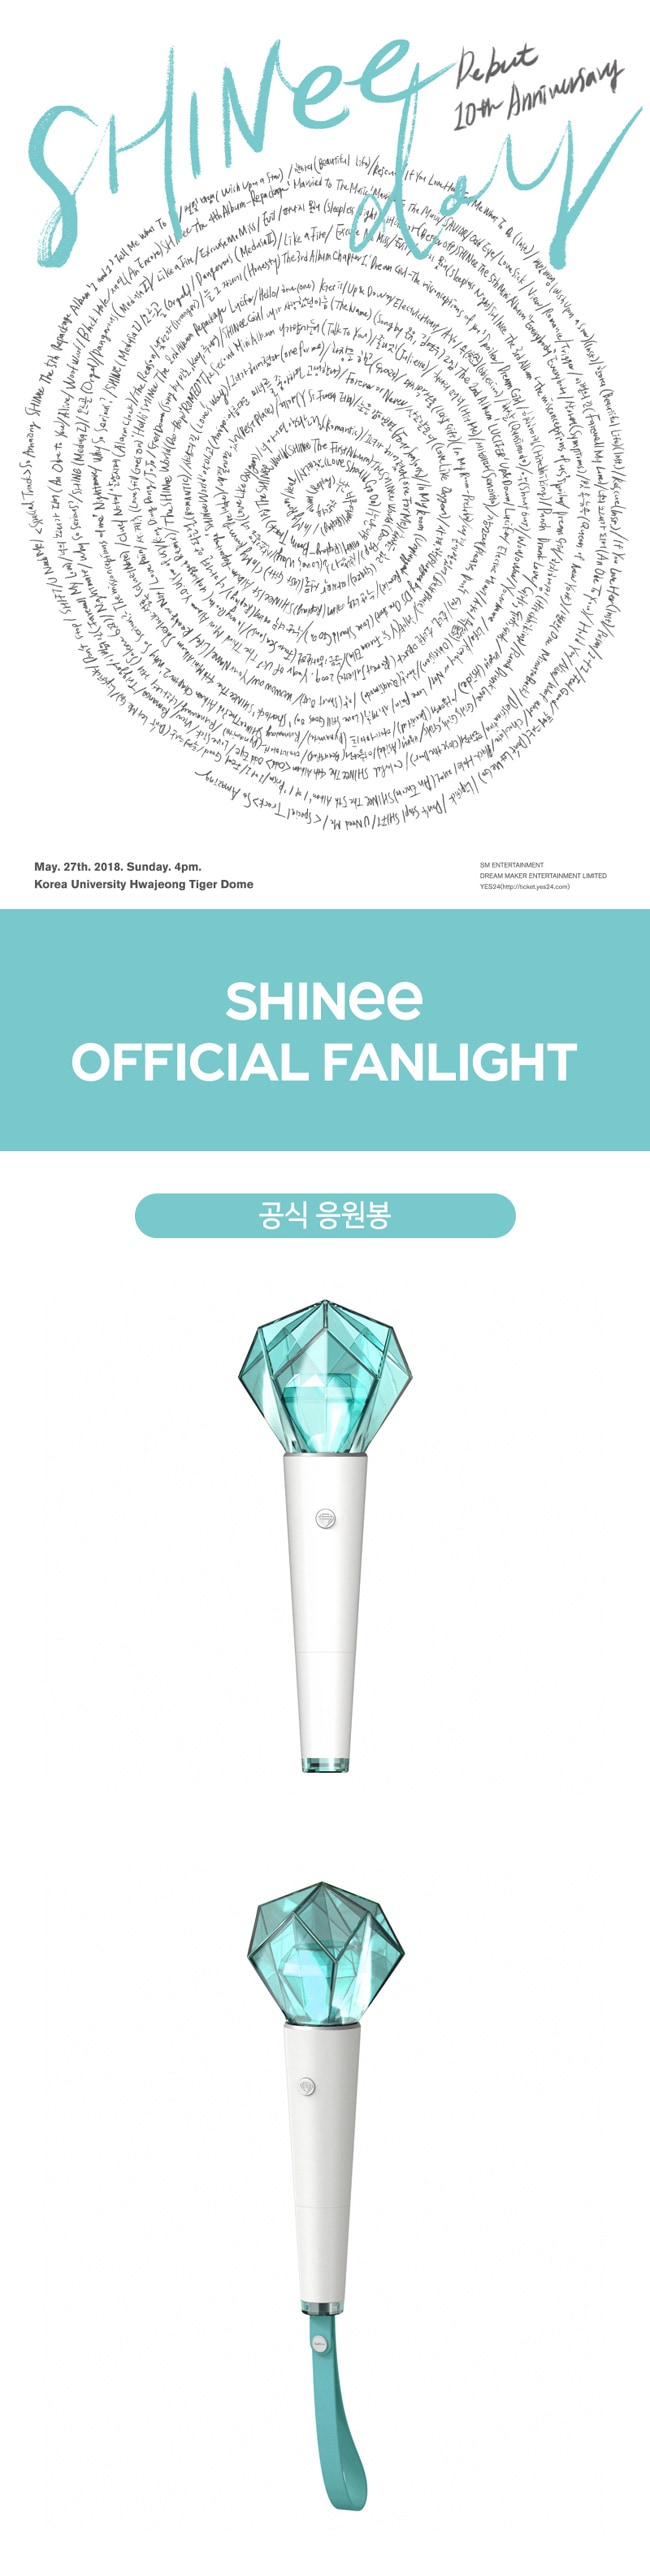 送料無料 Shinee Official Fanlight Shinee公式ペンライト